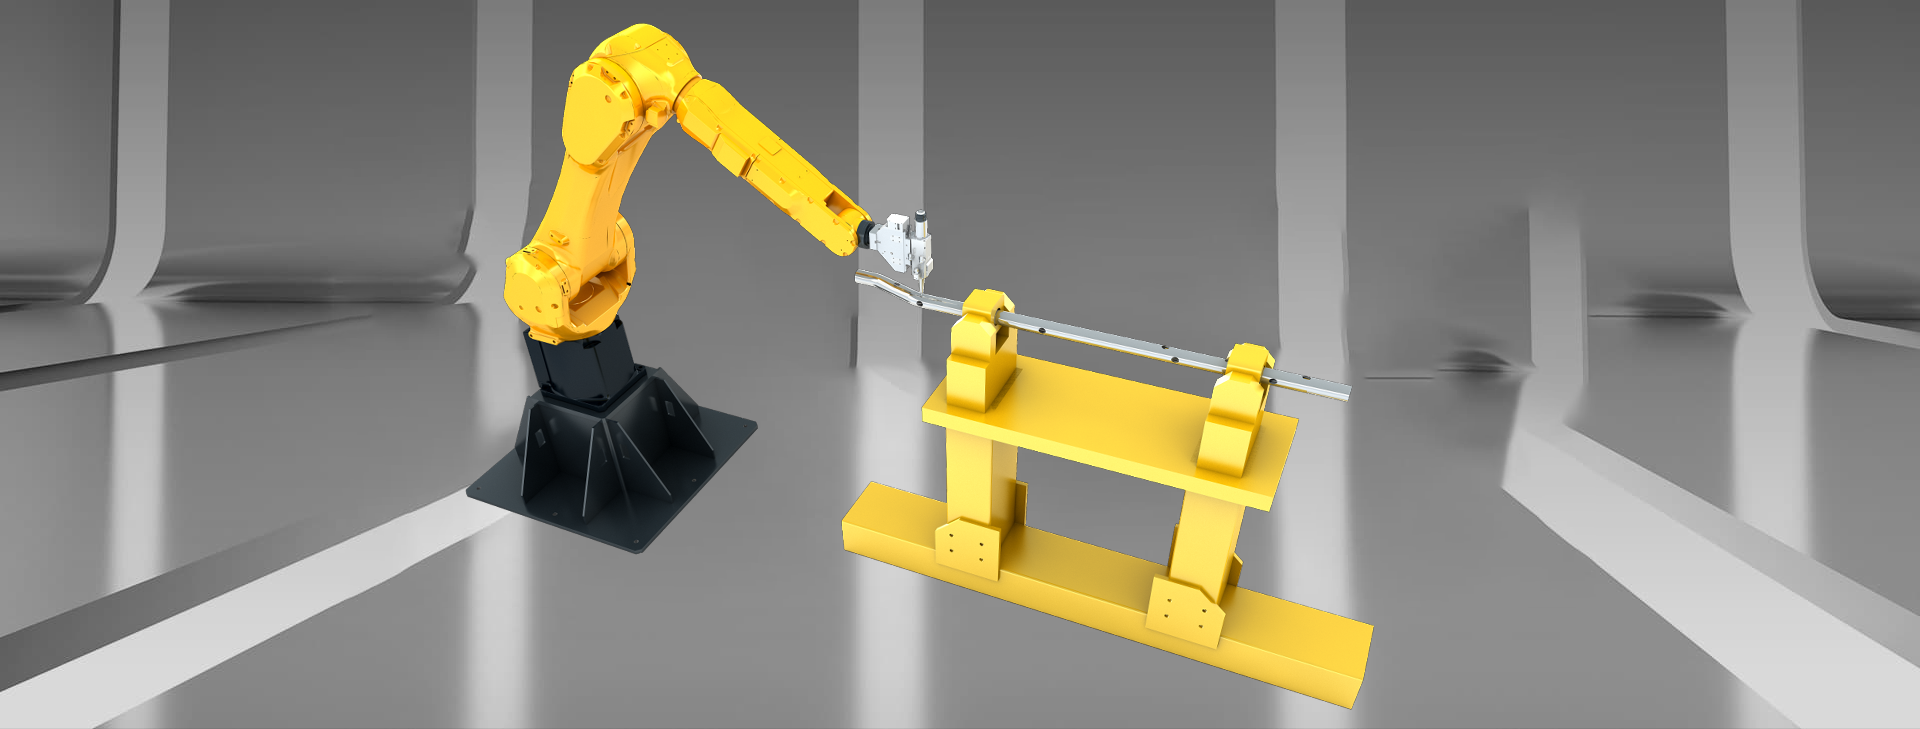 Máquina de corte do laser do robô 3D com tipo do suporte